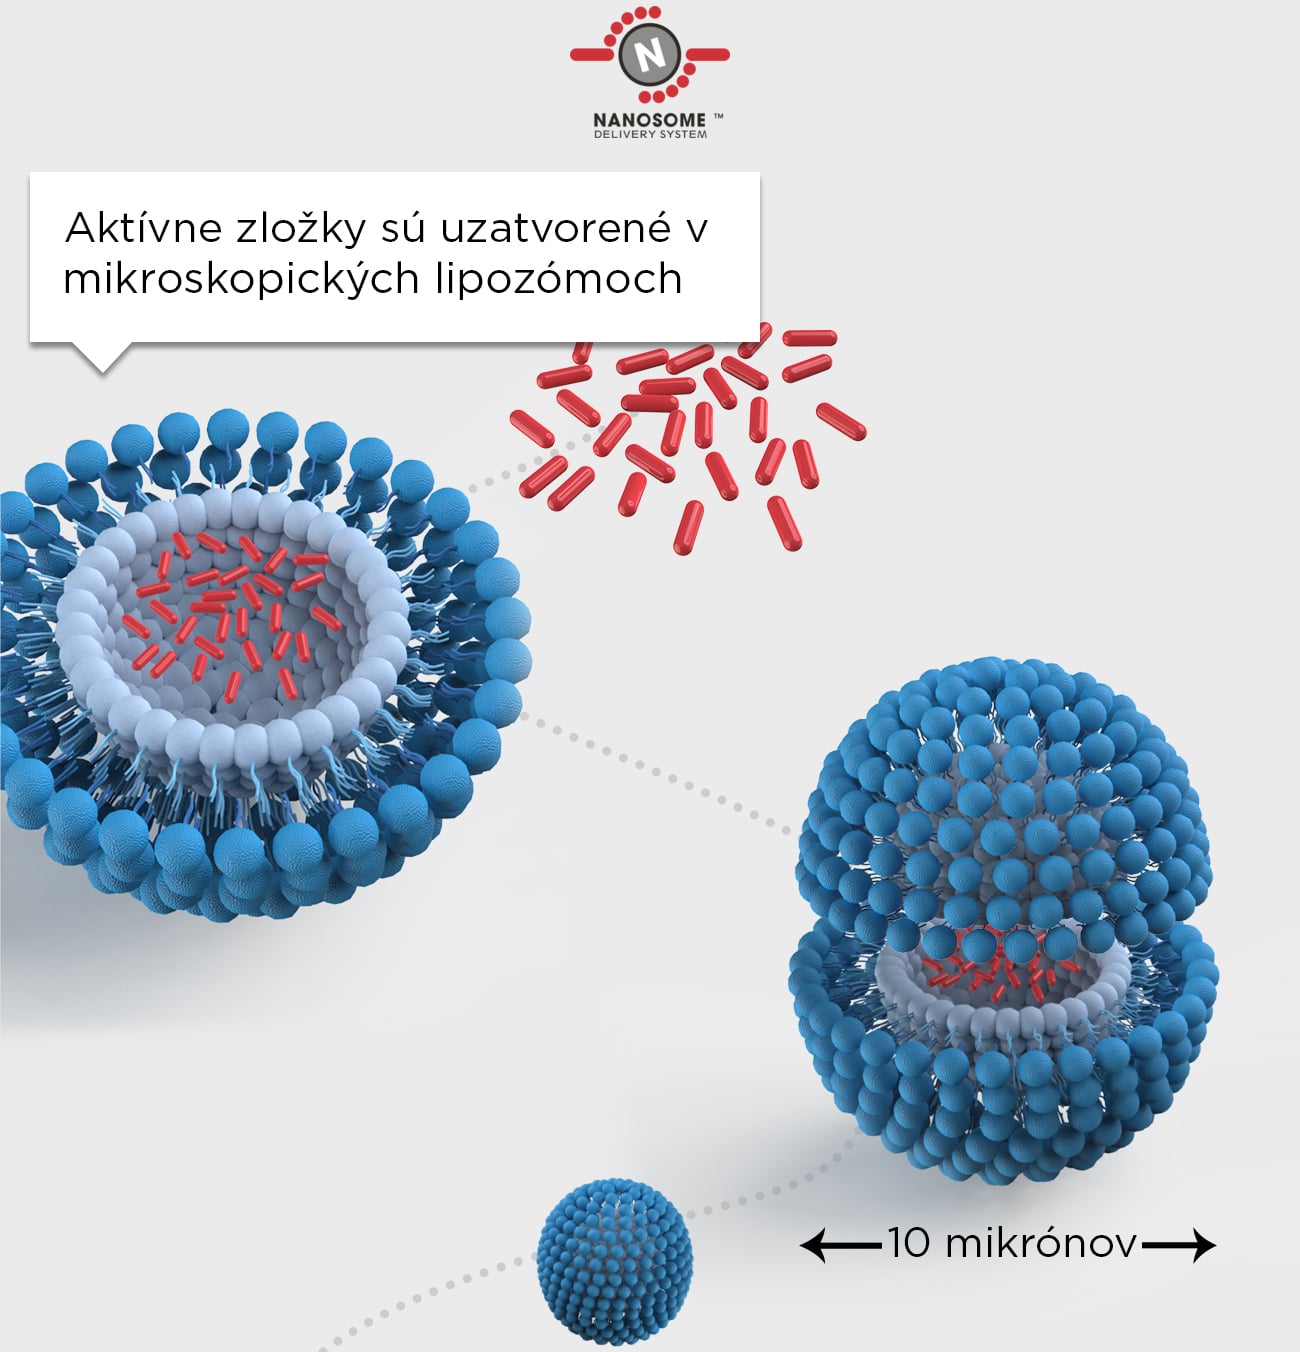 Tchnológia nanosomov pre lepšie dodanie výživných látok do pokožky - aktívne zložky sú uzatvorené v mikroskopických lipozómoch. 